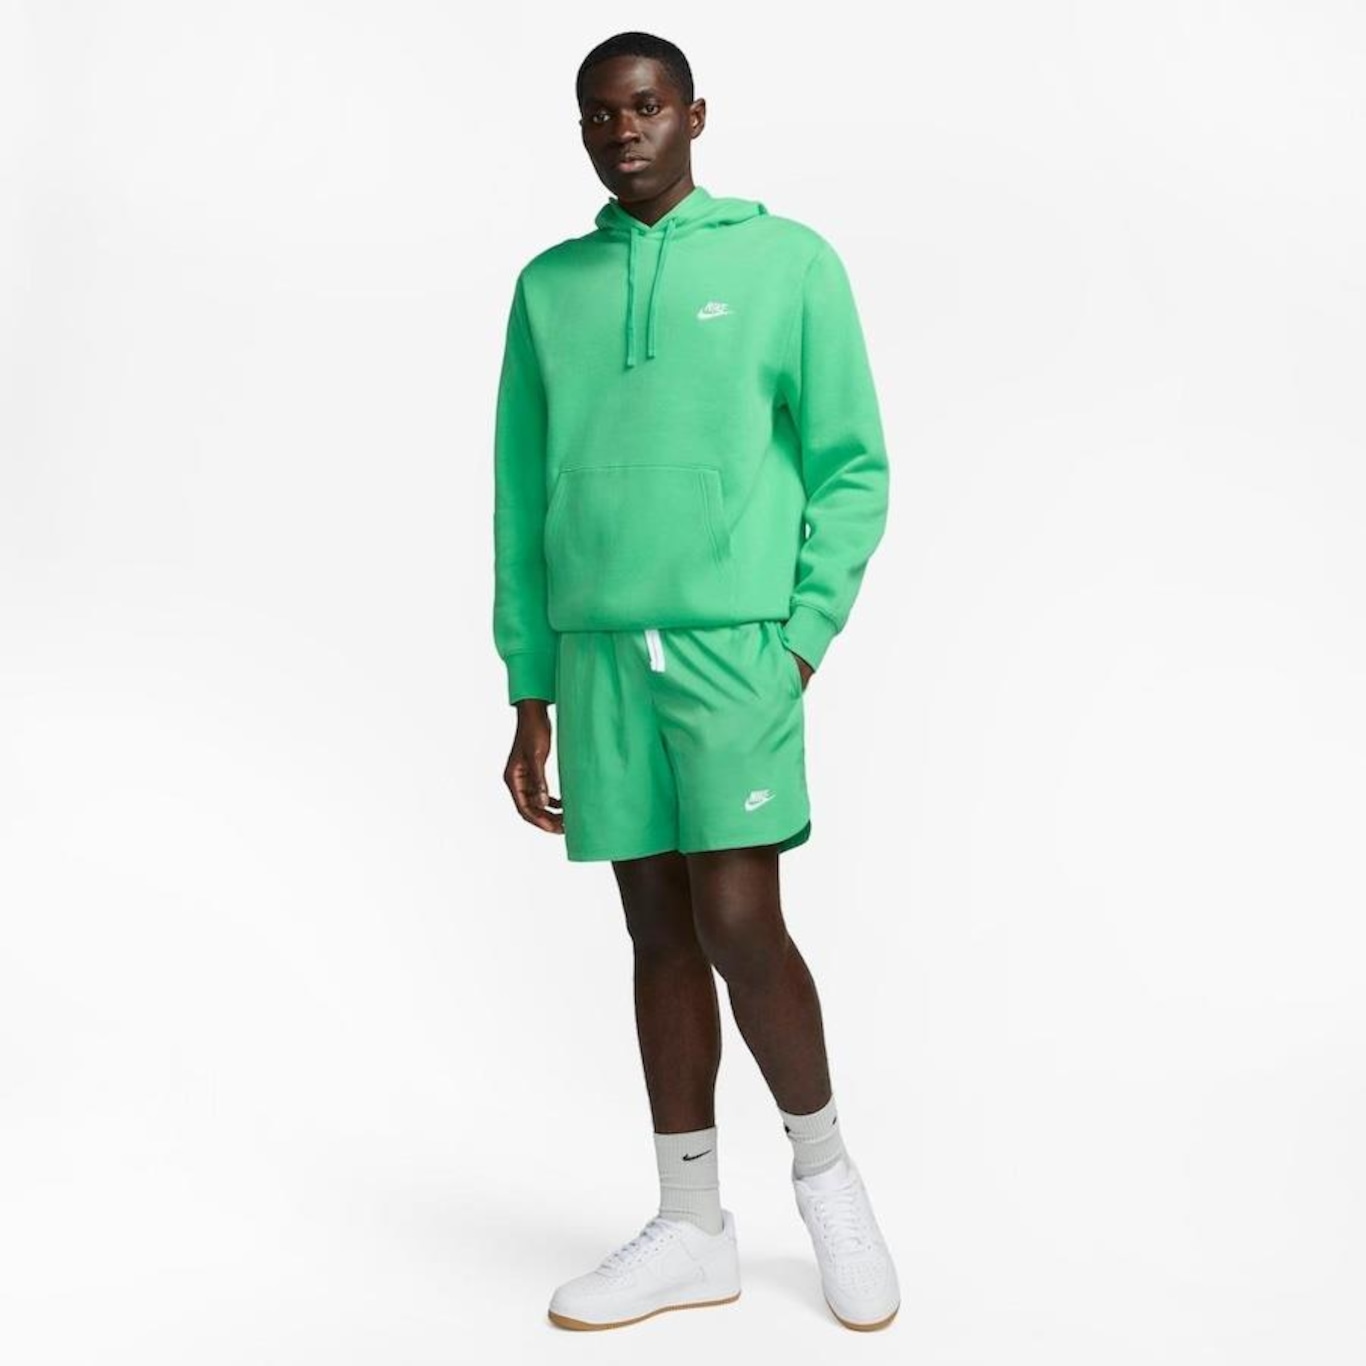 Blusão com Capuz Nike Sportswear Club Fleece - Unissex em Promoção